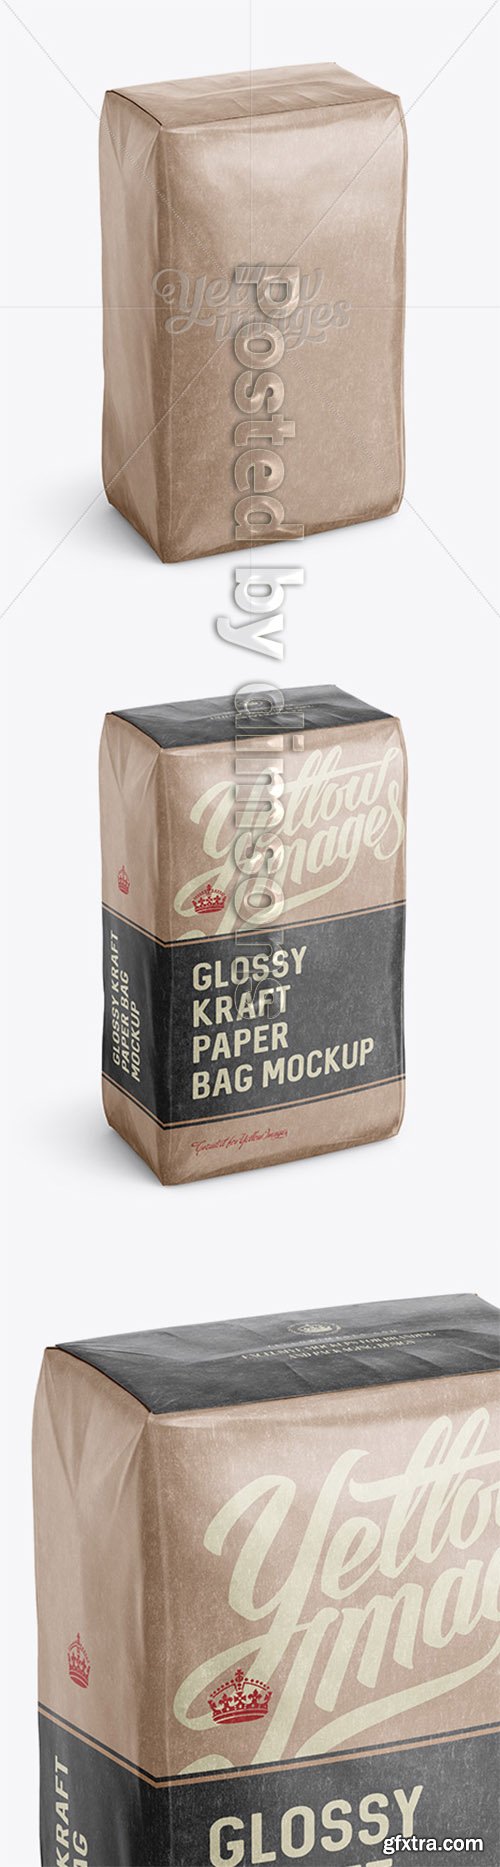 Glossy Kraft Paper Bag Mockup - Halfside View (High-Angle Shot) 13557